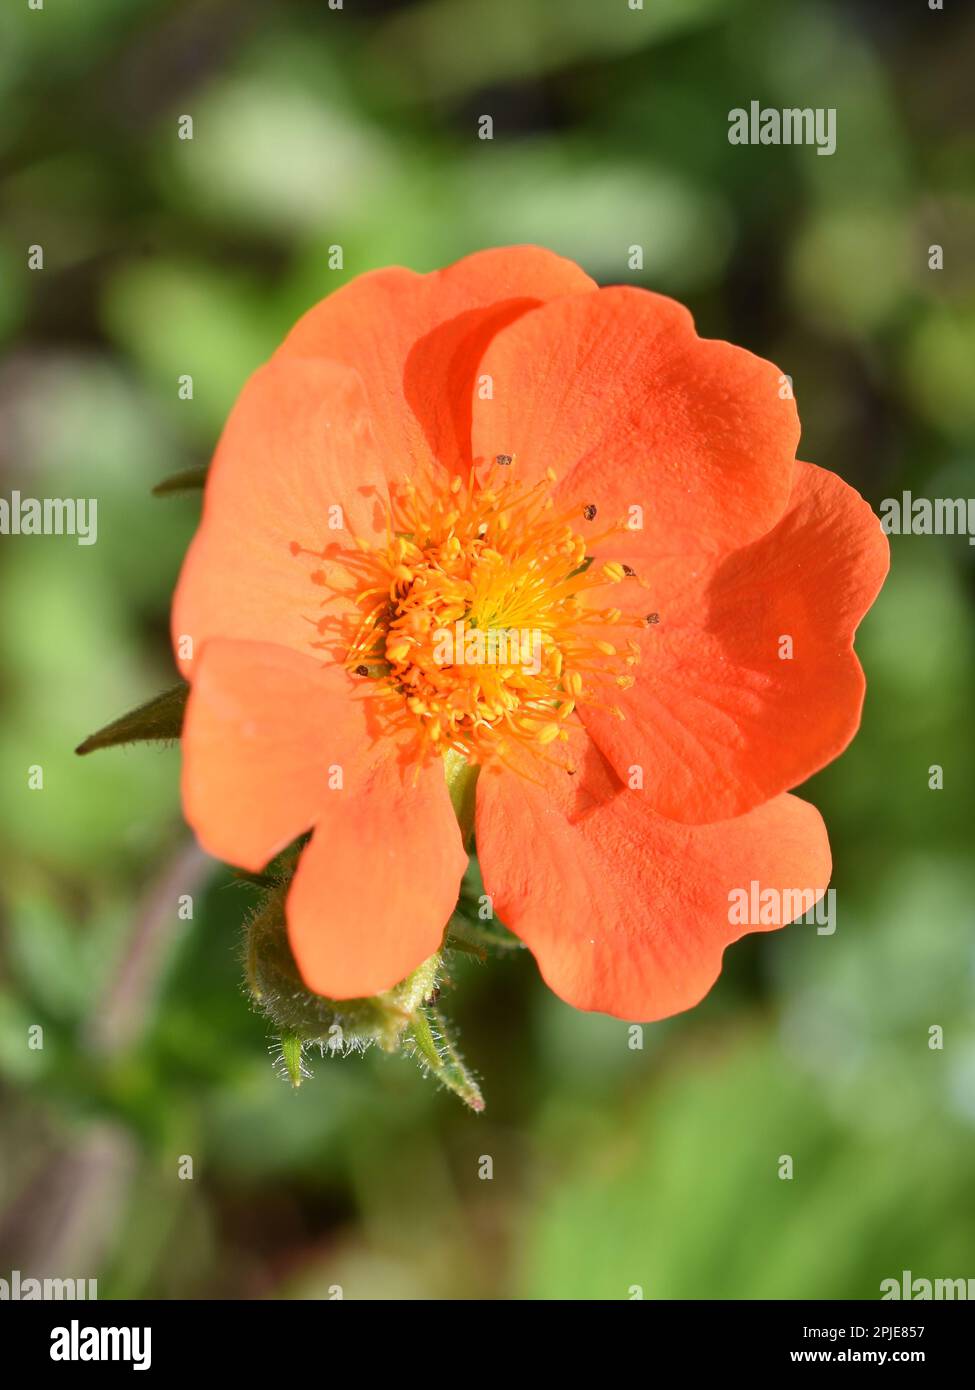 Dwarf orange avens Geum coccineum close up on orange coloured flower Stock Photo